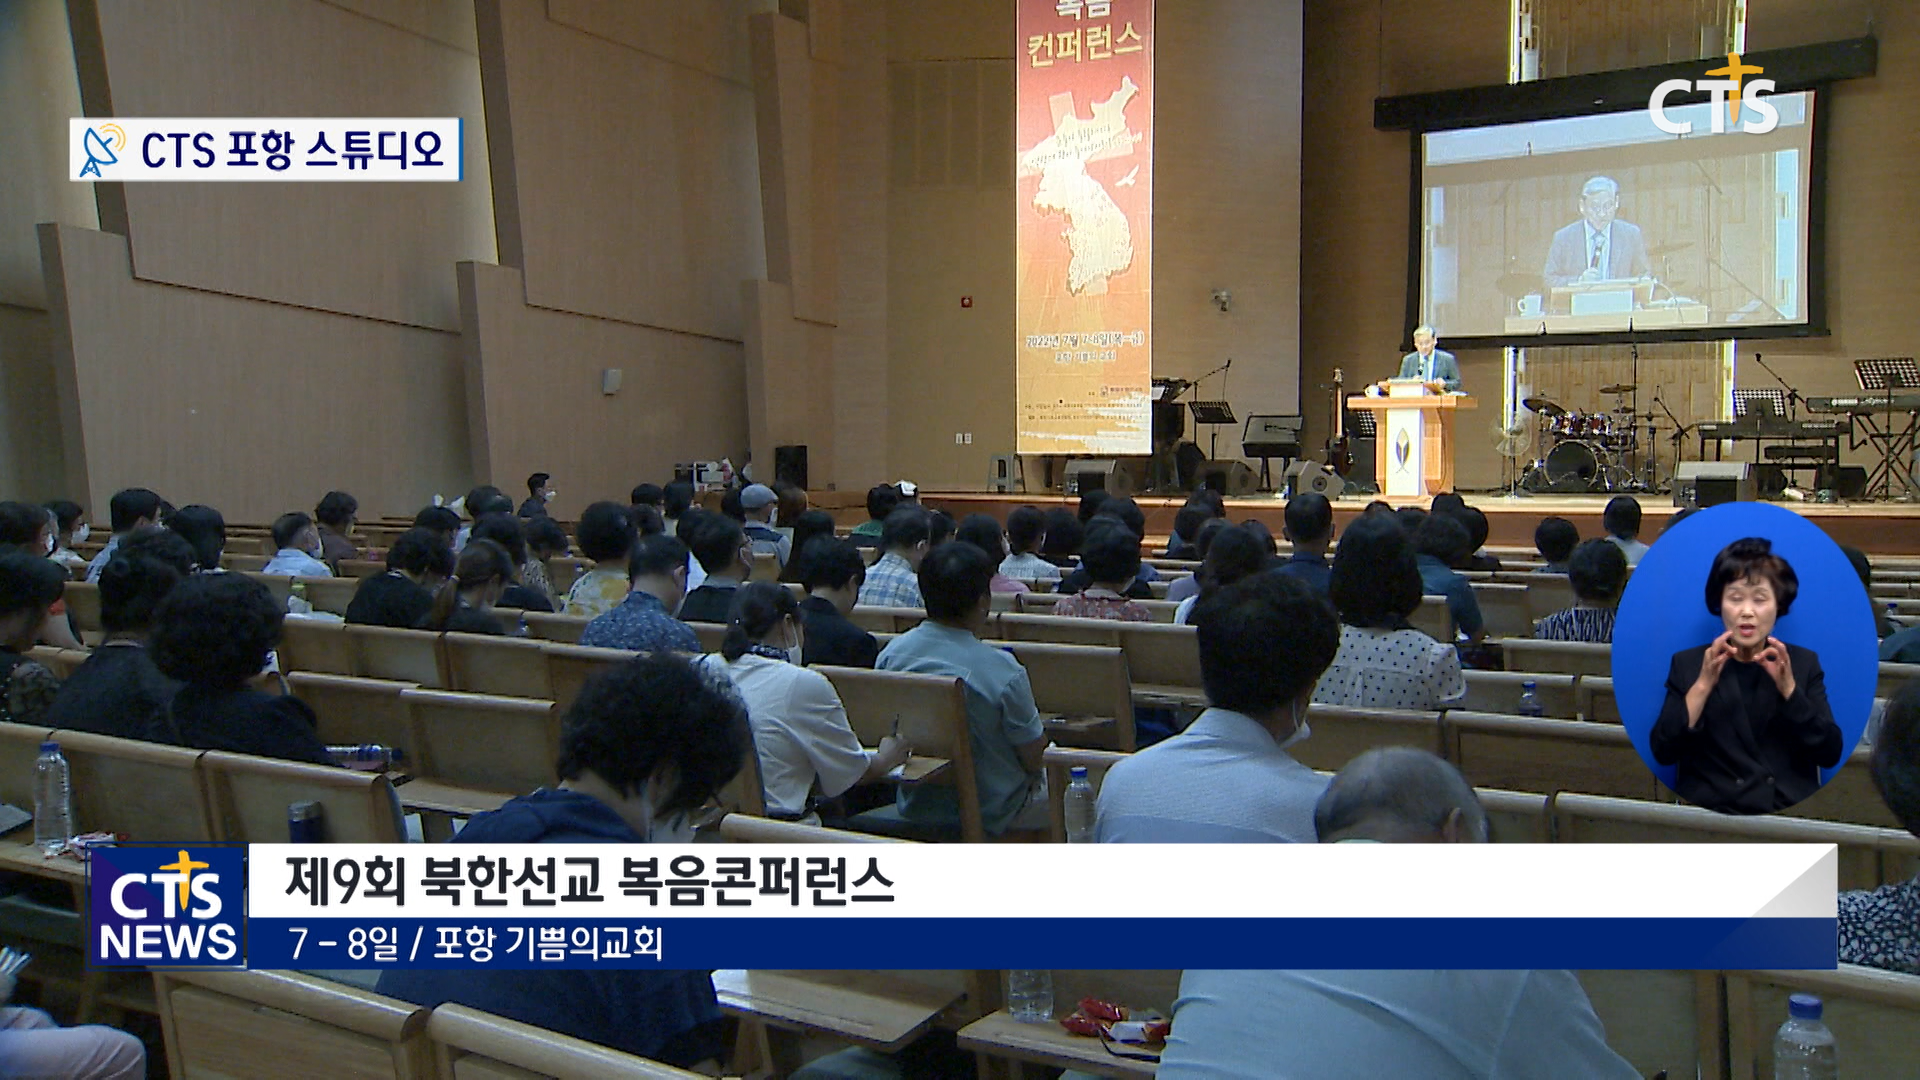 제9회 북한선교 복음컨퍼런스